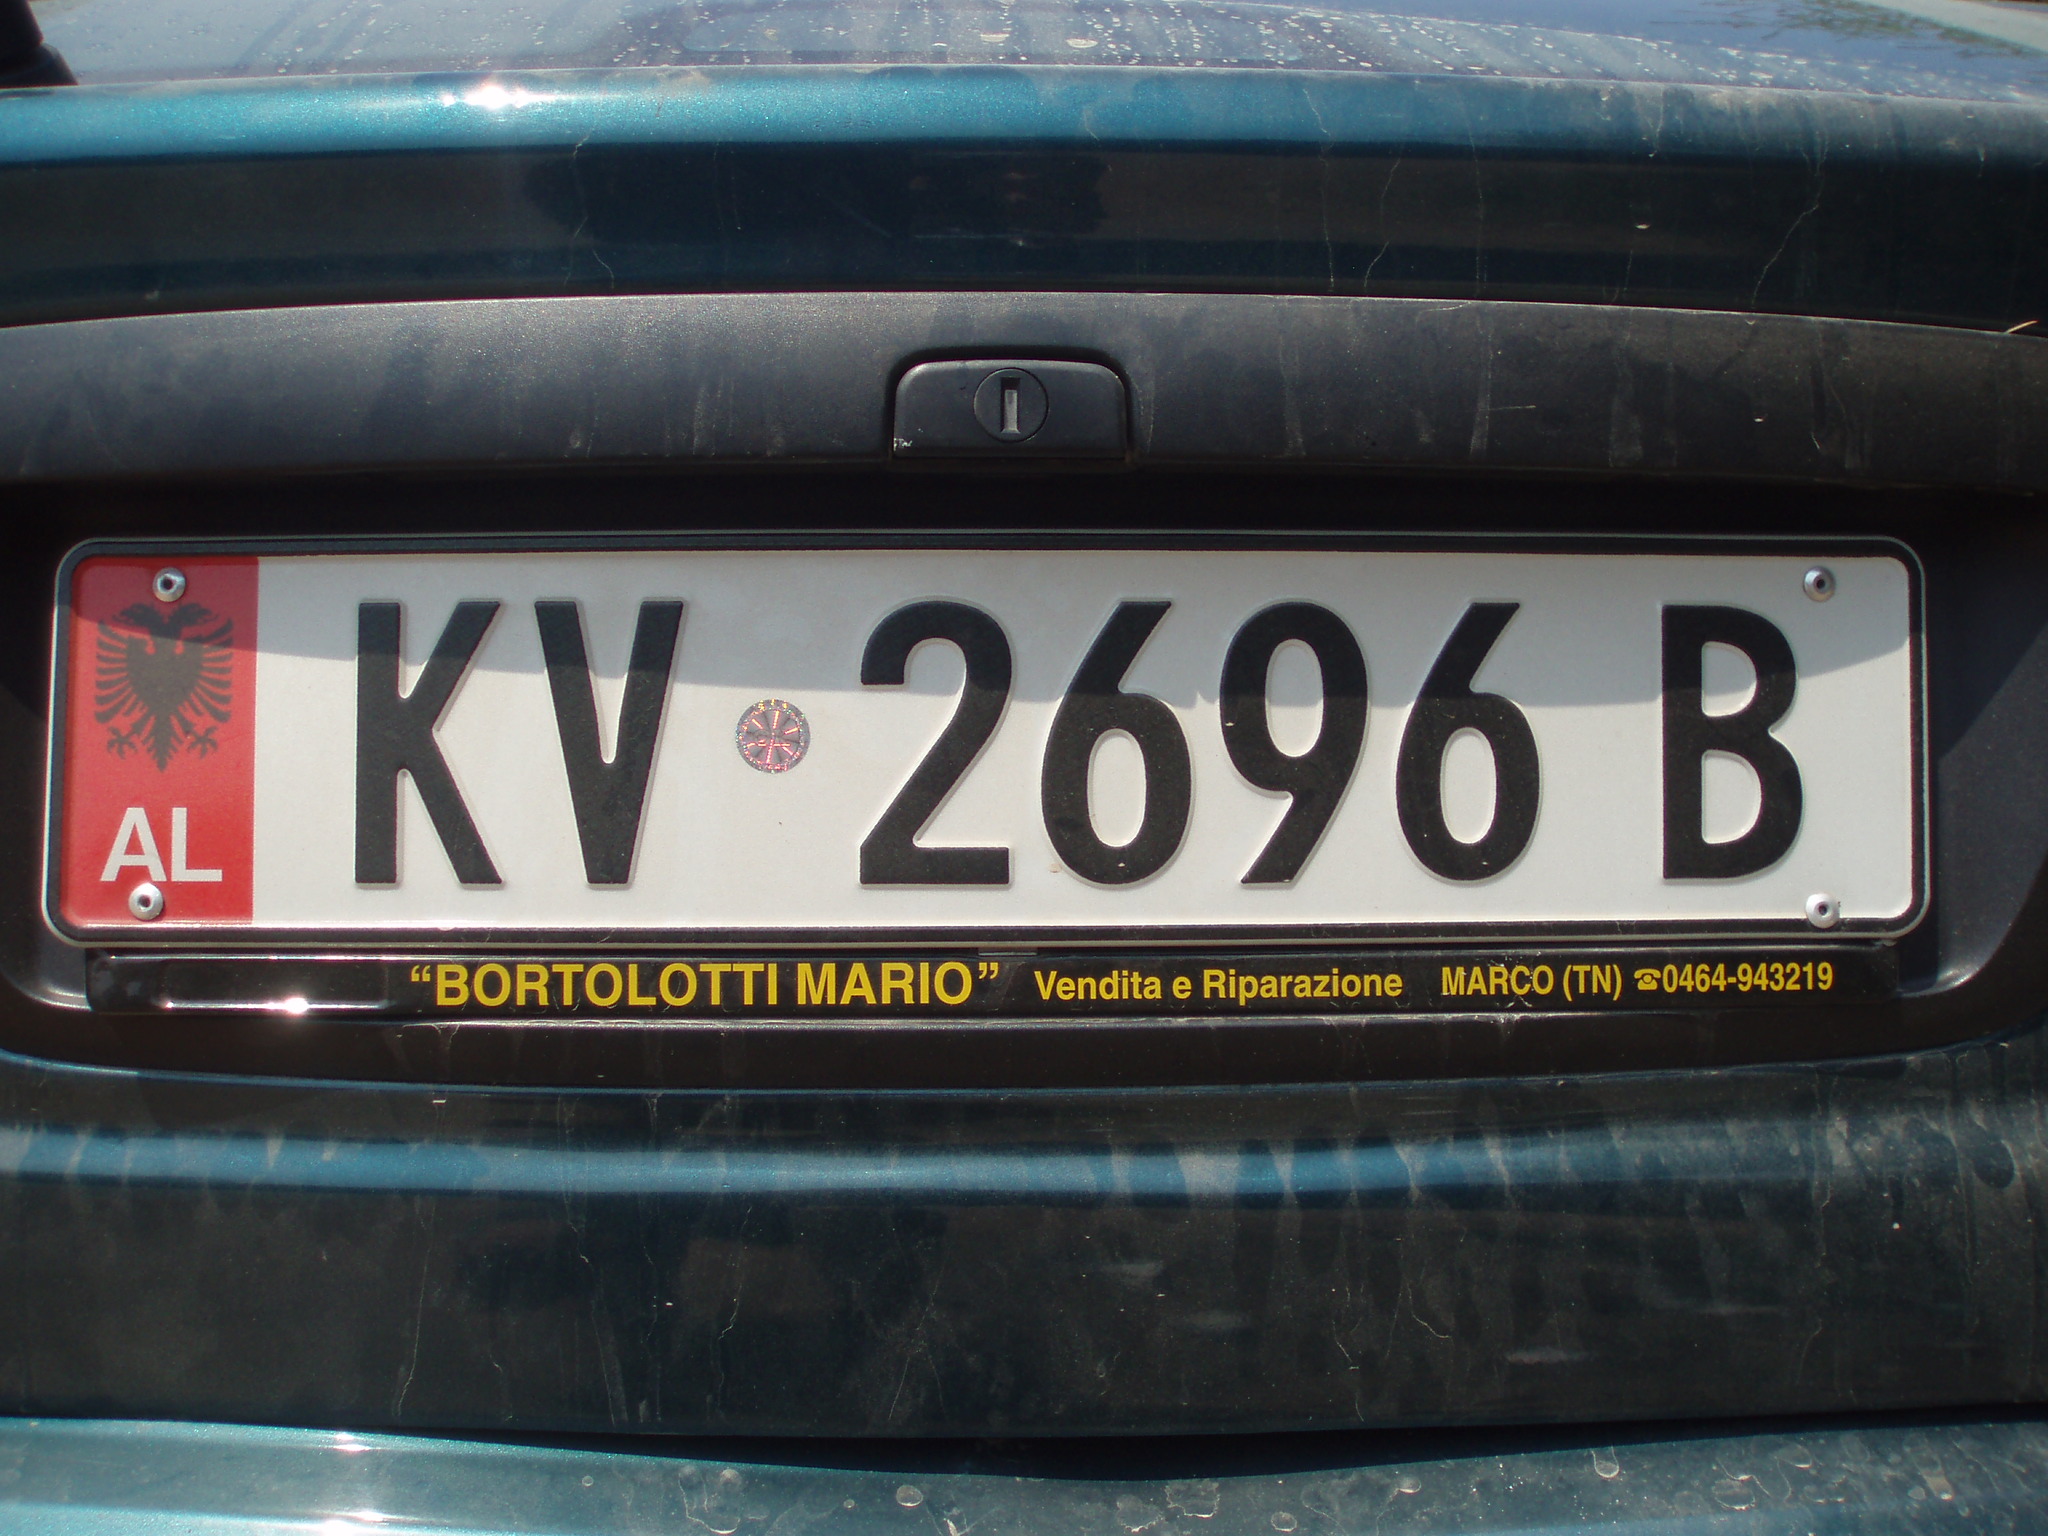 Европейские номера в россии. Автомобильные номера. Европейские автомобильные номерные знаки. Иностранные номера автомобилей. Албанские автомобильные номера.